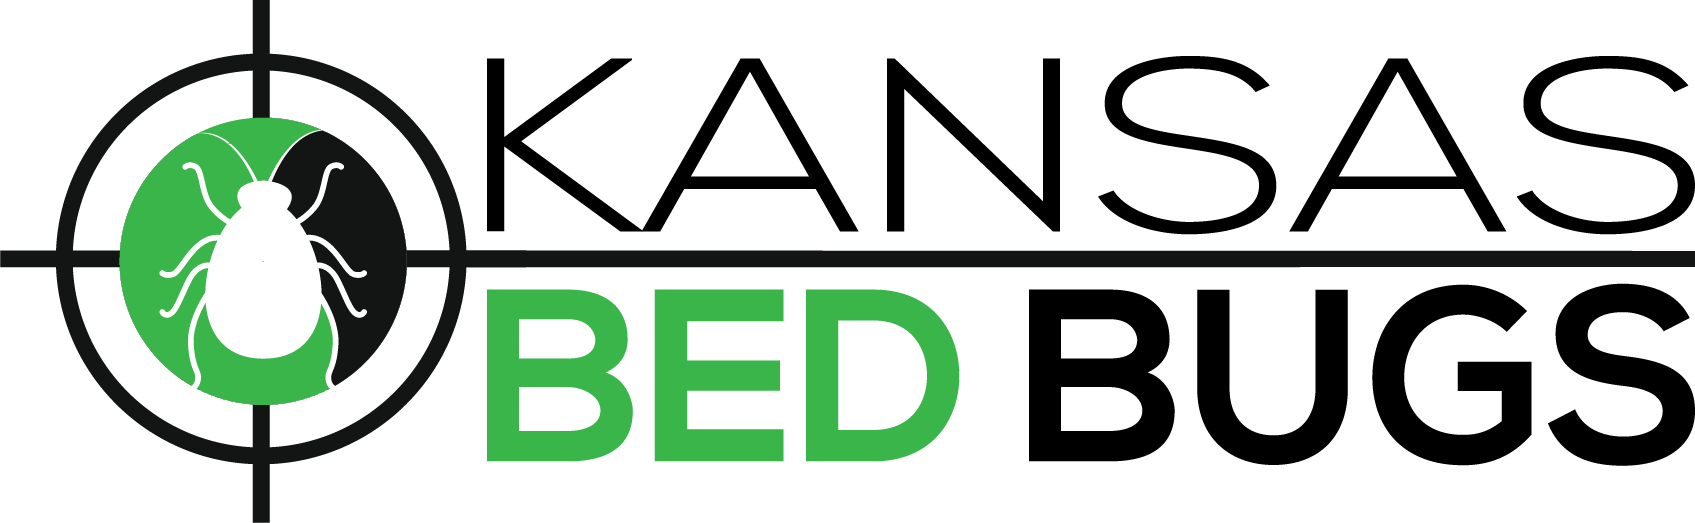 Kansas Bed Bug LLC 